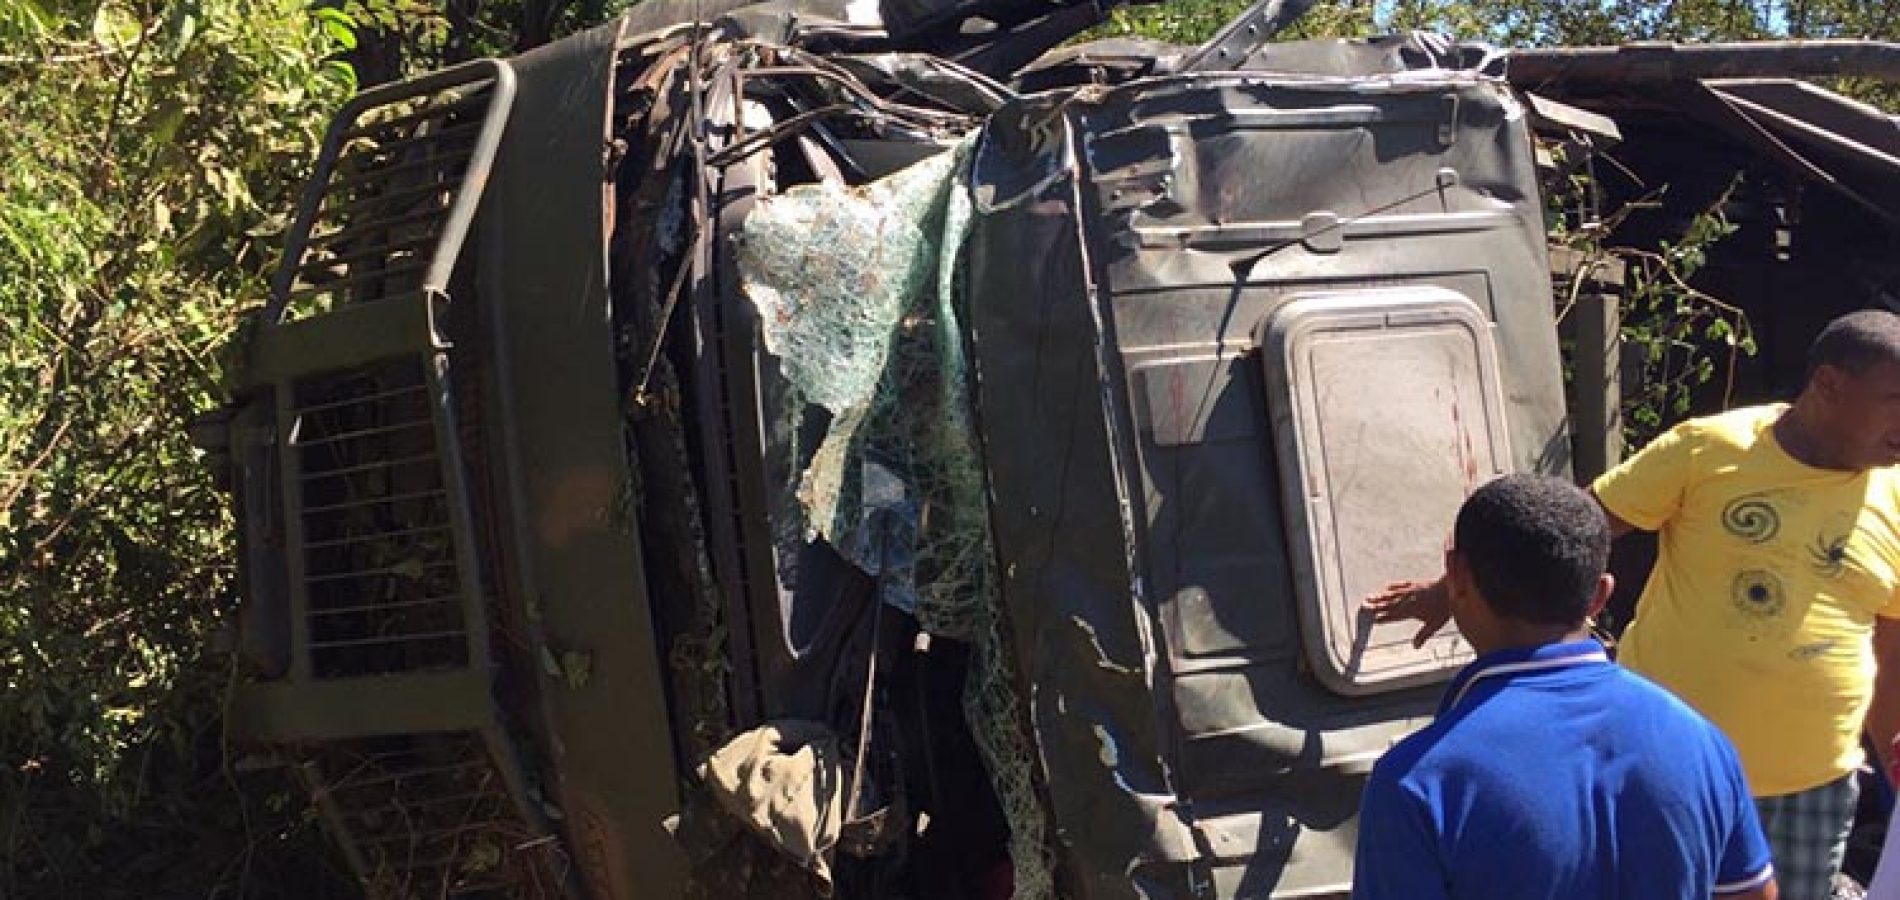 Caminhão do Exército com cerca de 30 militares tomba no Piauí e deixa um morto e vários feridos